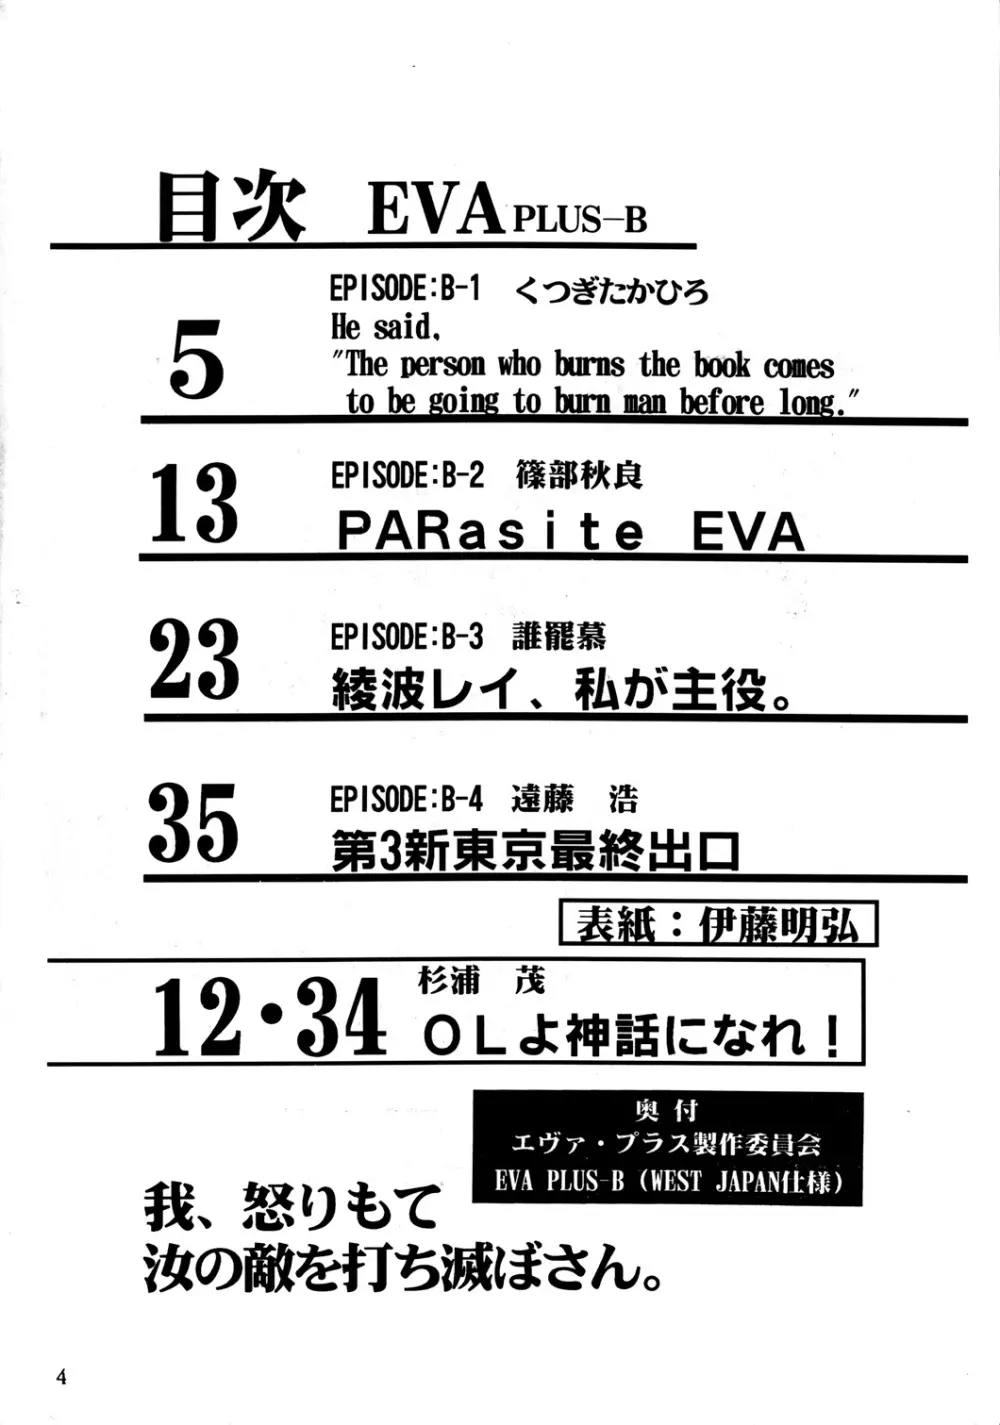 EVA PLUS B WEST JAPAN 仕様 3ページ